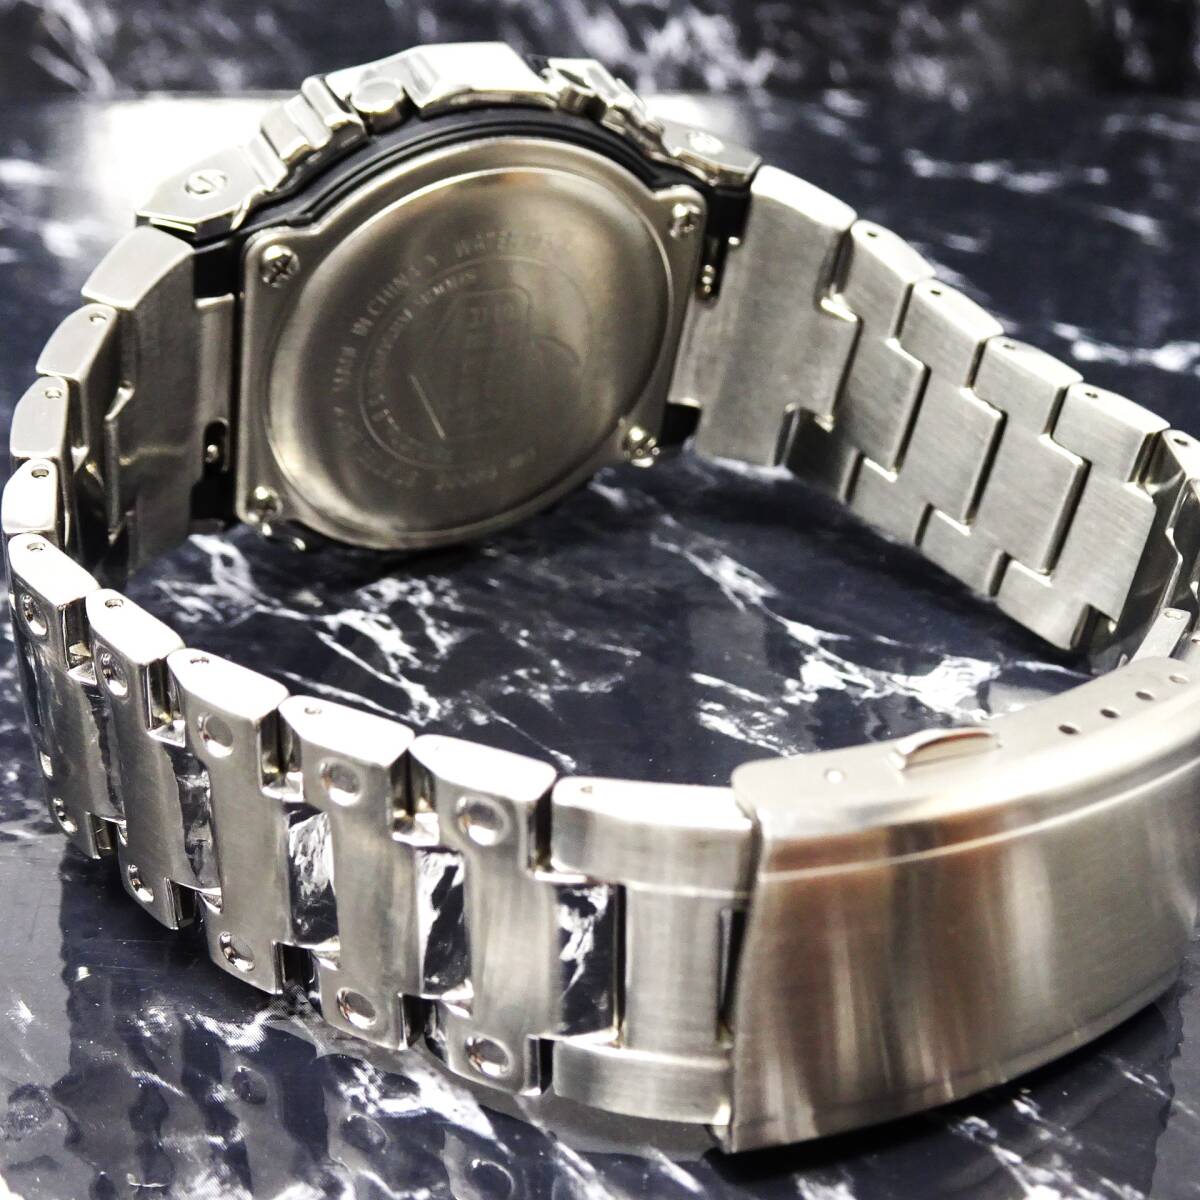 〓送料無料〓新品〓Gショックカスタム本体付きDW5600デジタル腕時計ステンレス製ベネチアン柄エンボス加工ベゼル・フルメタルモデルの画像4